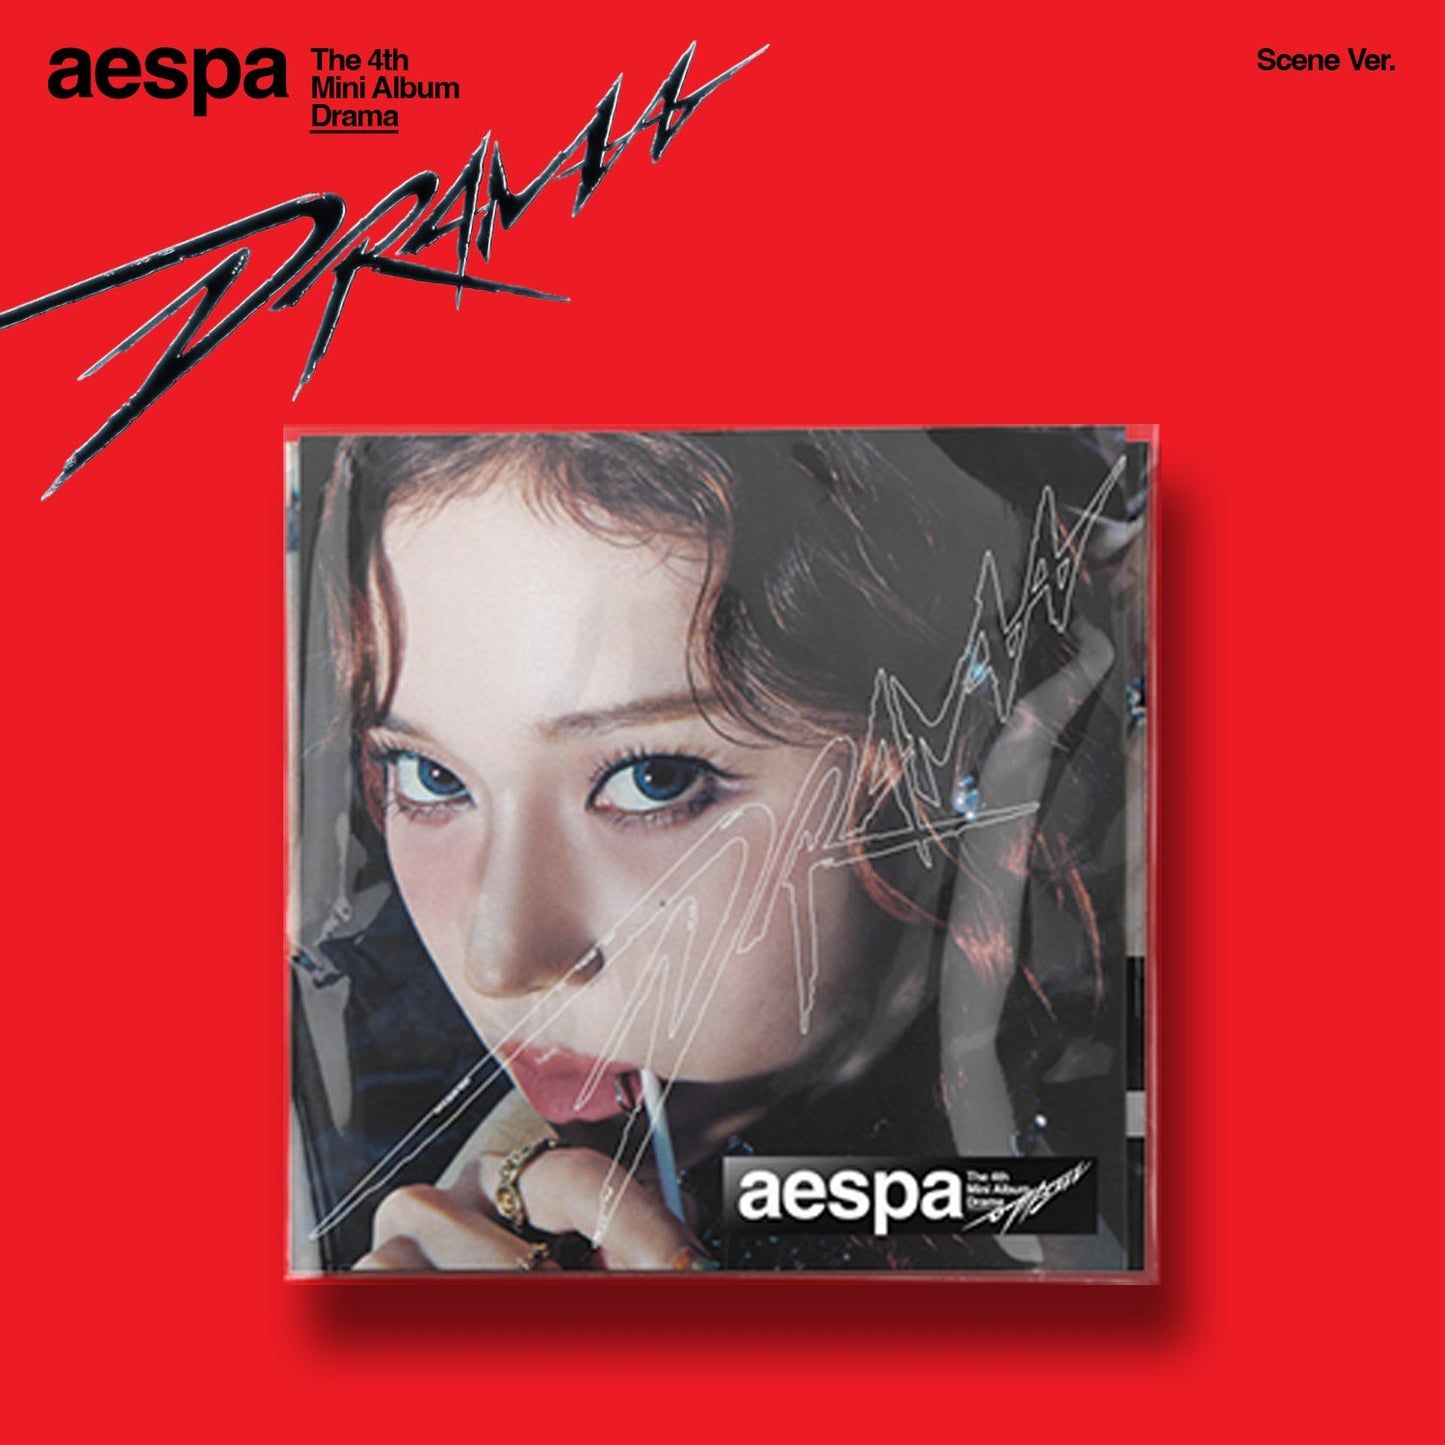 AESPA 4TH MINI ALBUM 'DRAMA' (SCENE) WINTER VERSION COVER